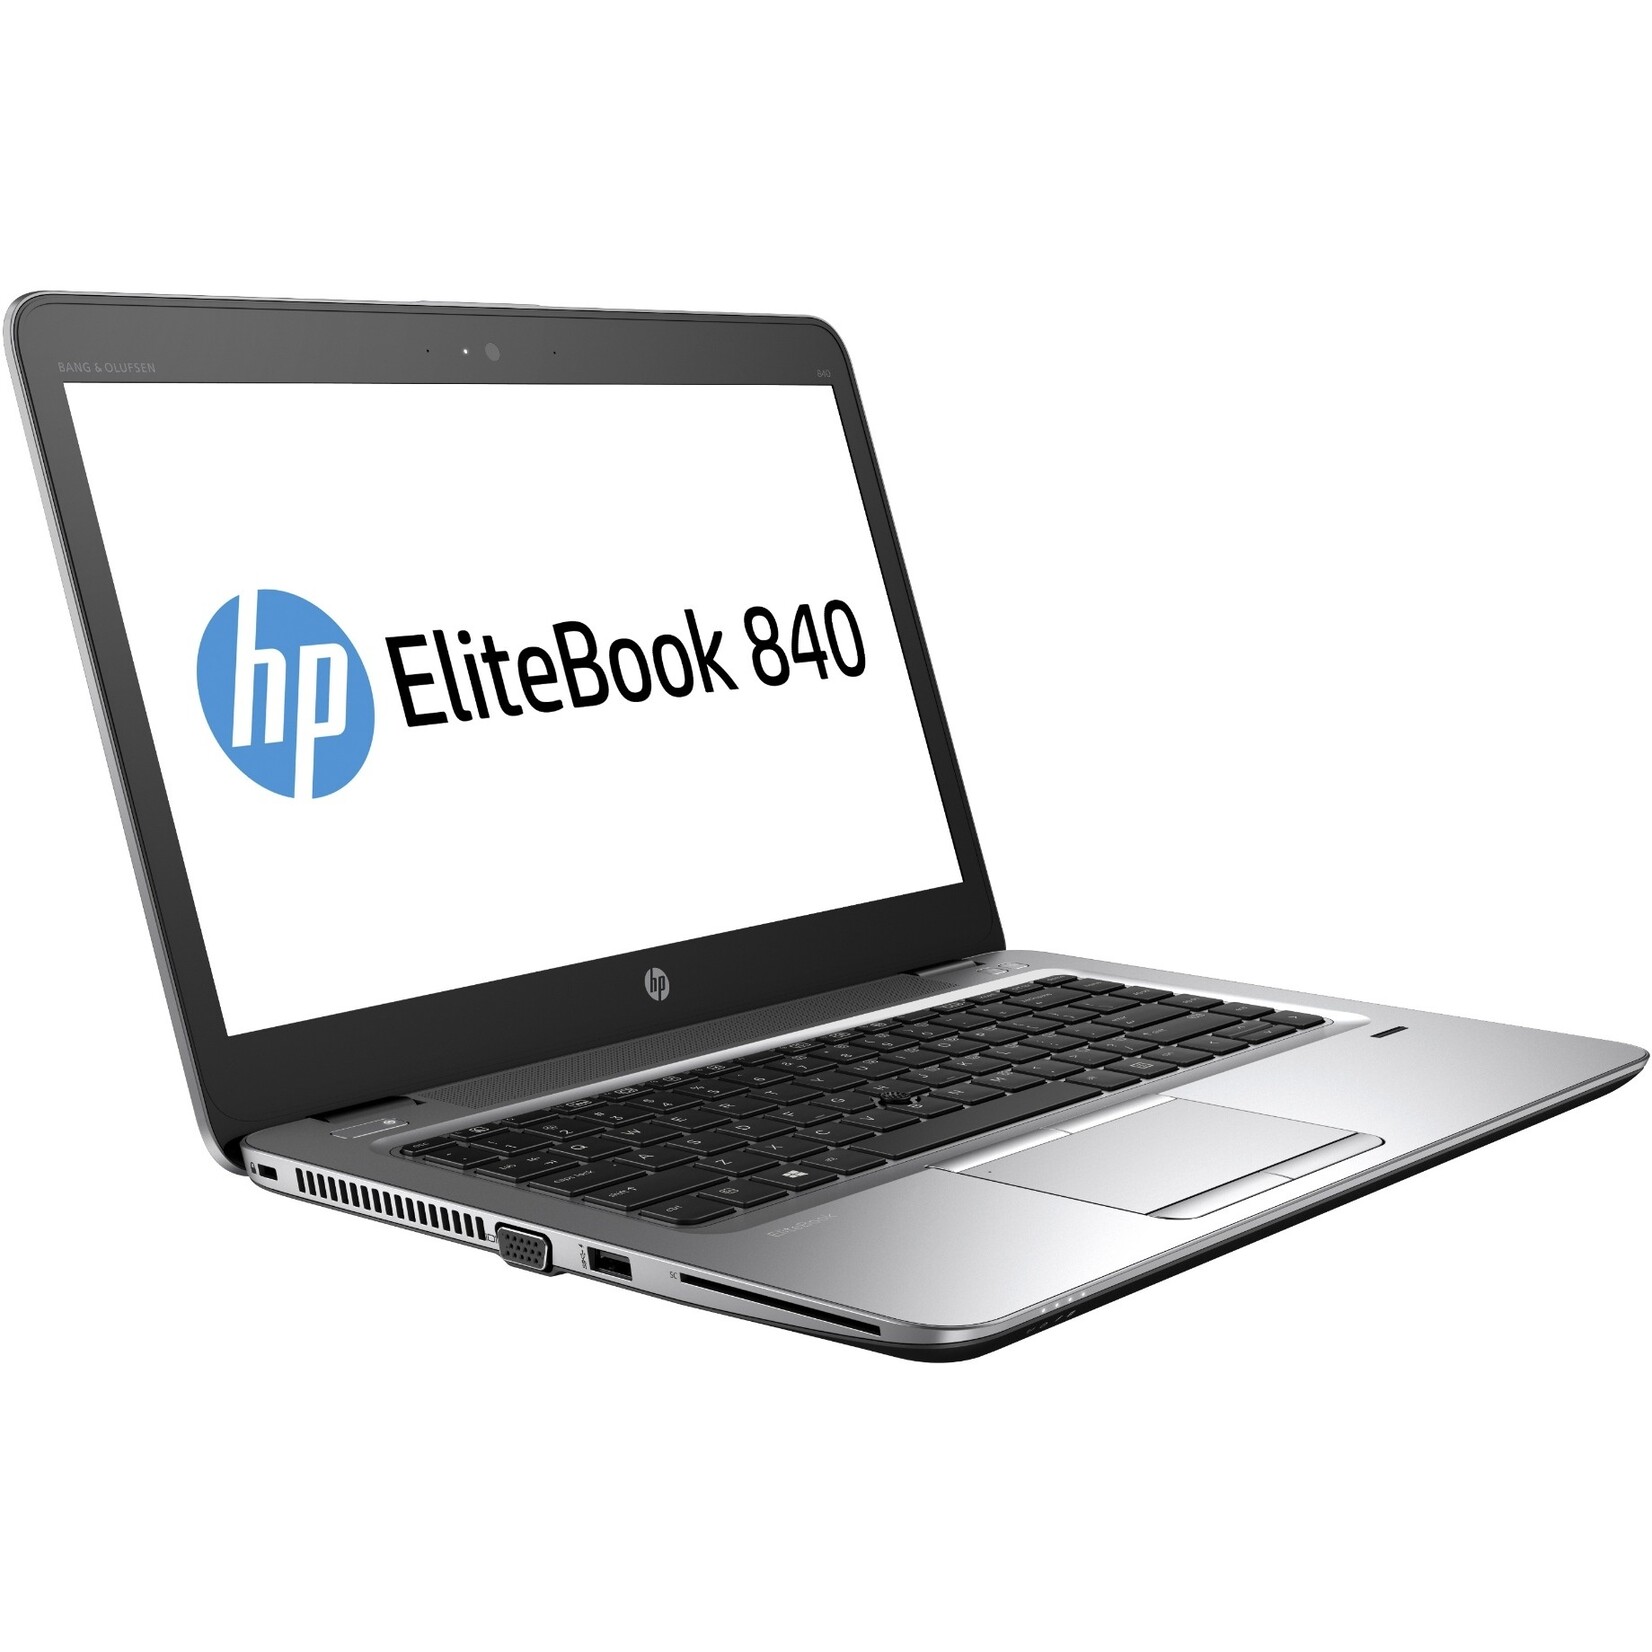 HP HP EliteBook 840 G3 Refurbished Laptop met vele extra's